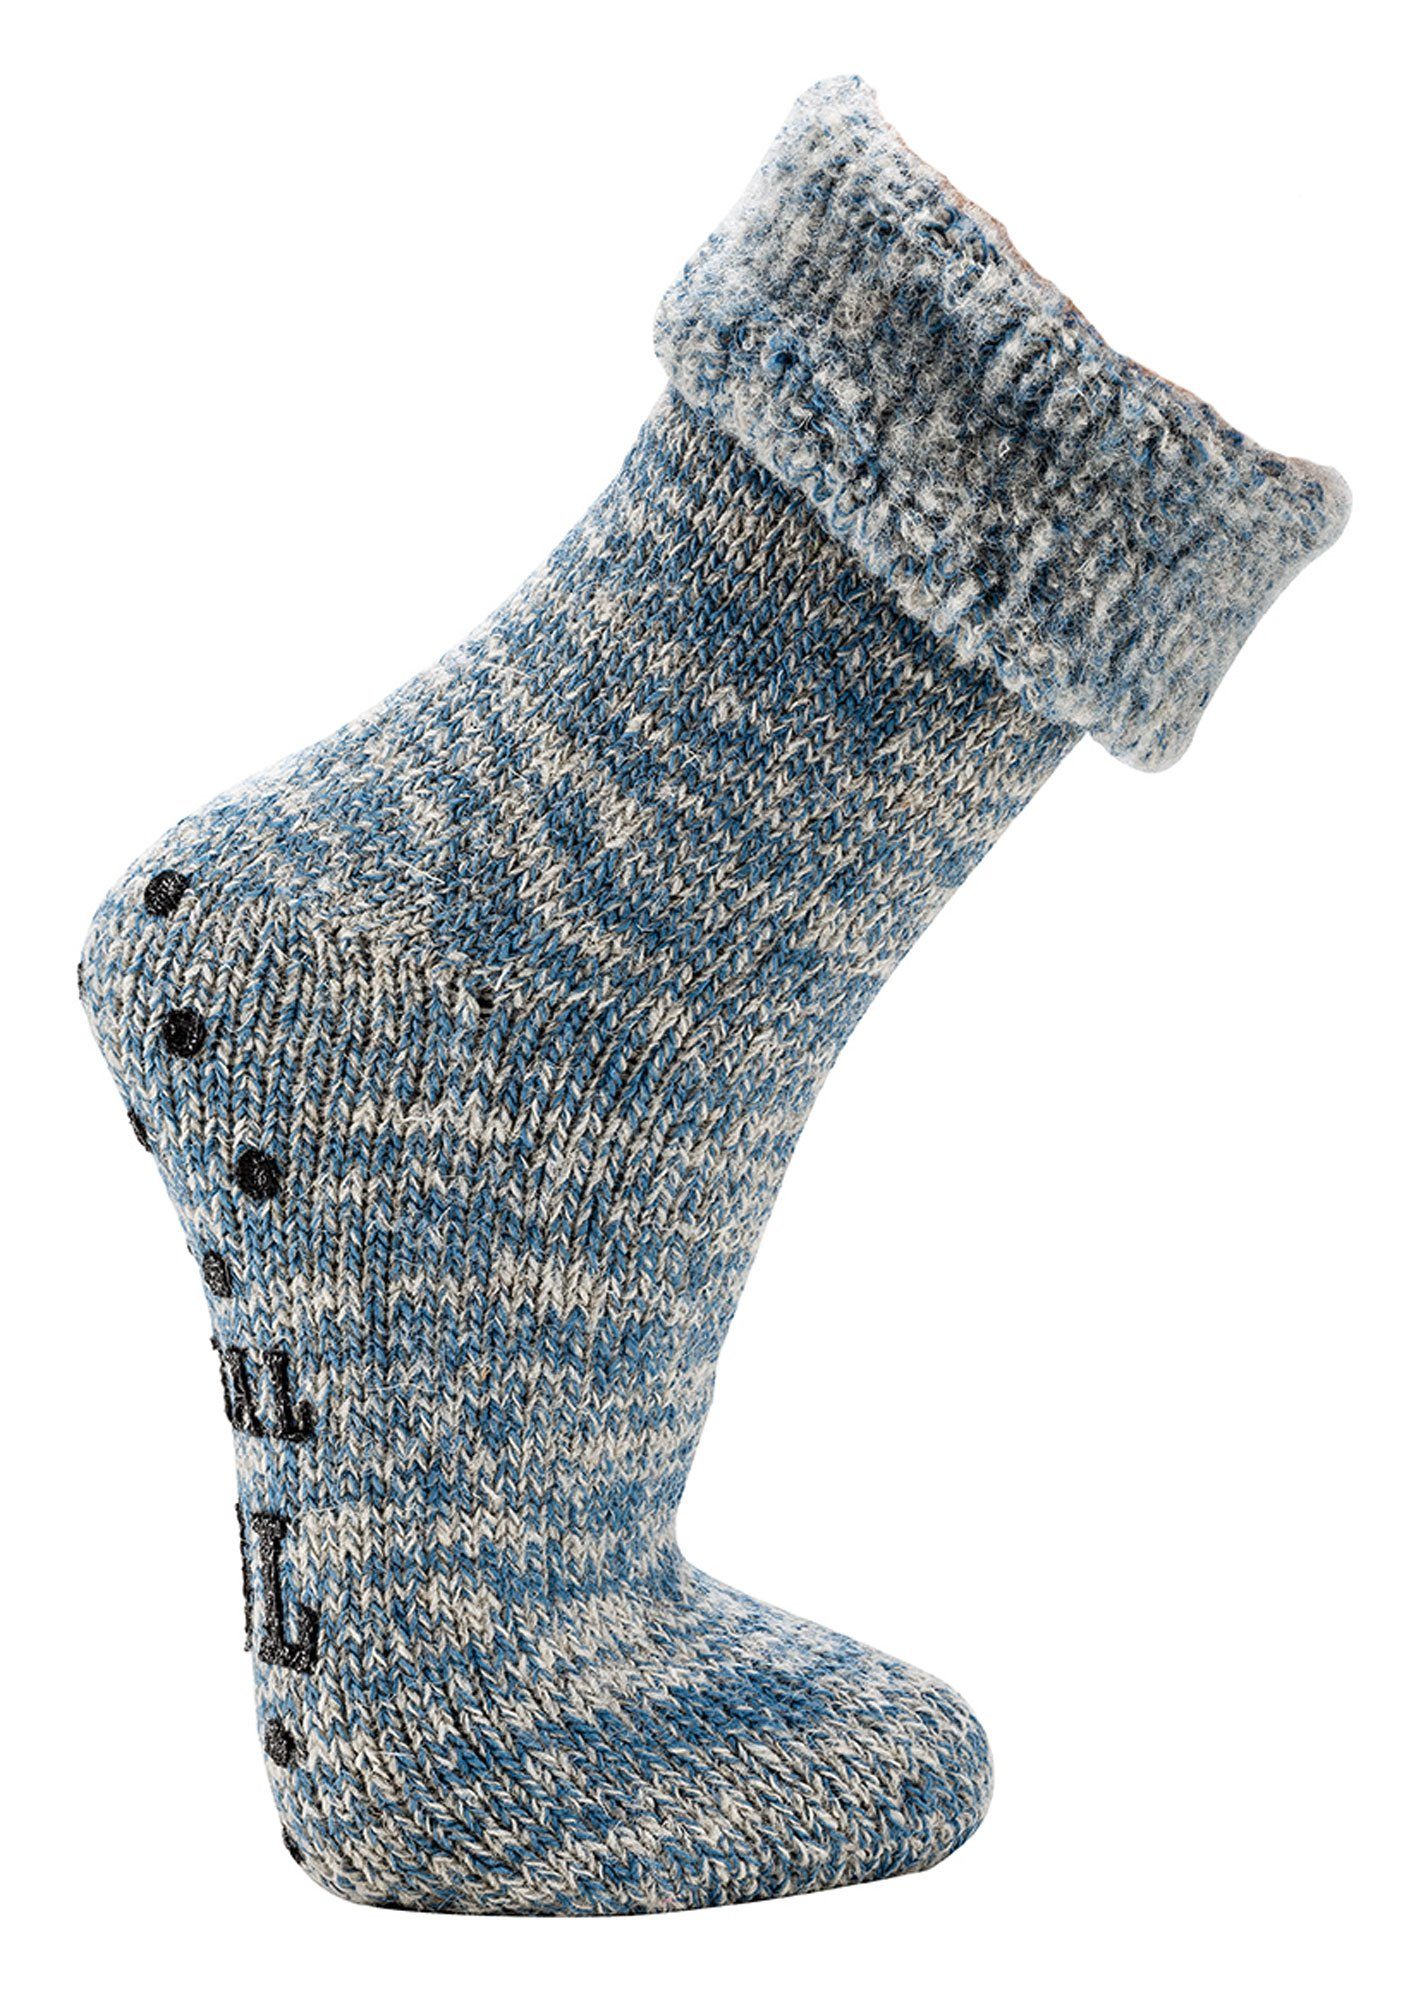 jeansmelange anti Wowerat Homesocks Wolle ABS MEGA ABS Socken Rutsch gerauht, 65% Thermo Socken Druck innen